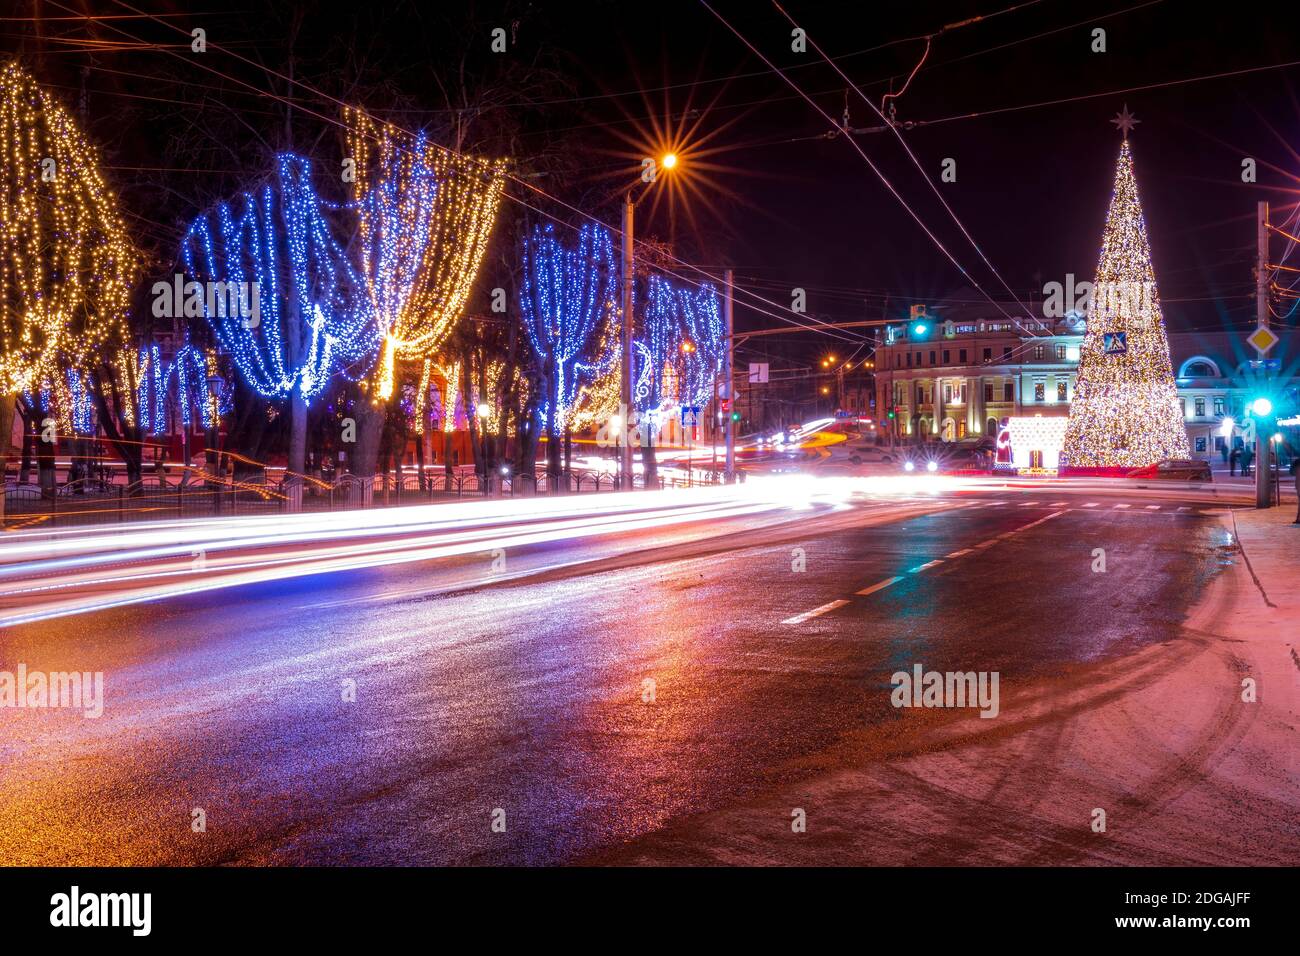 Città notturna con decorazioni natalizie, abeti e tracce di fari di automobili in movimento, riflessi nell'asfalto bagnato. Foto Stock